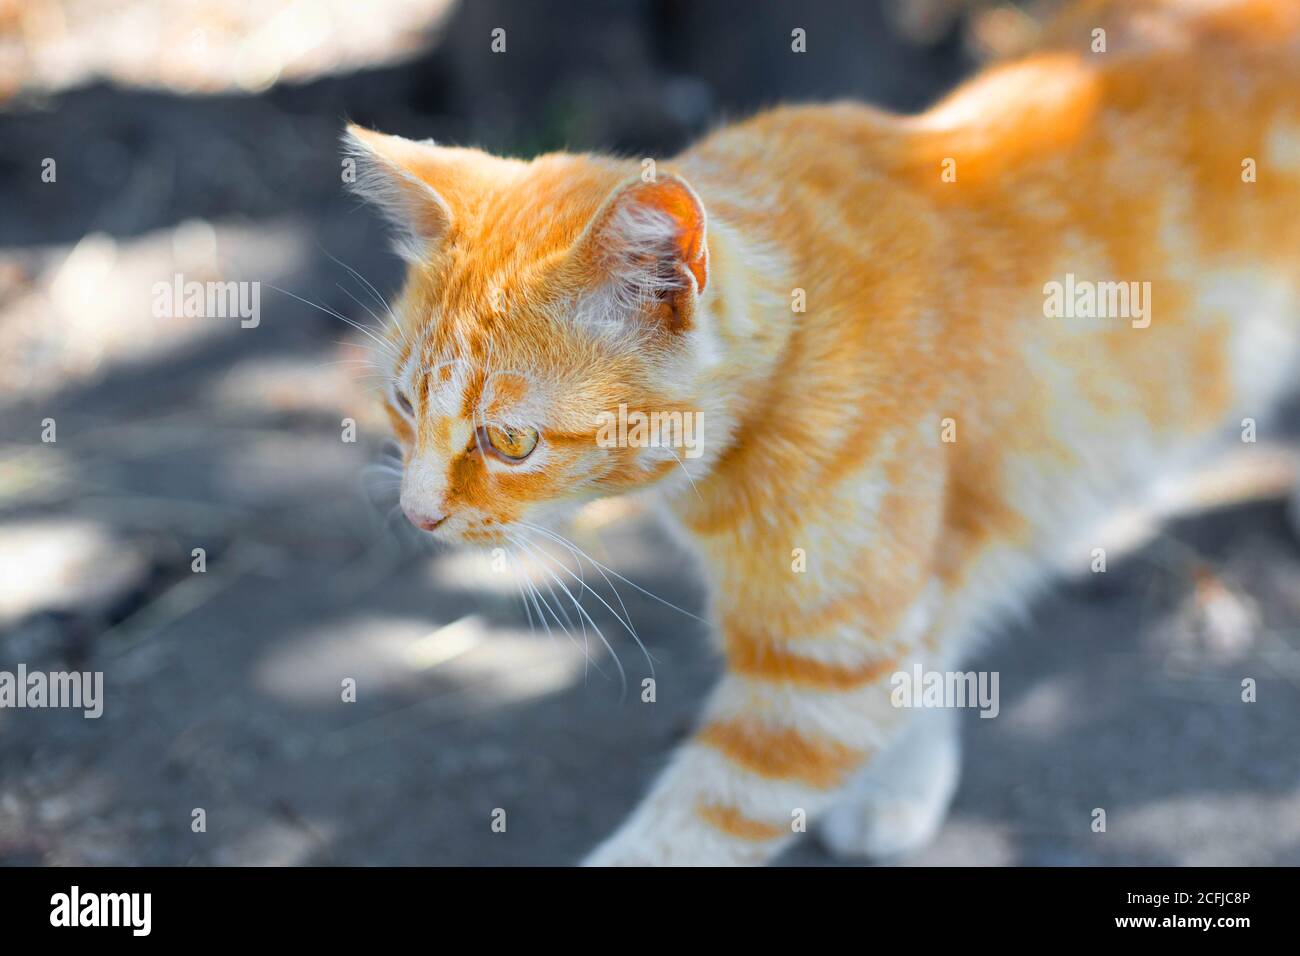 Magnifique chat de gingembre descend dans la rue comme un tigre Banque D'Images